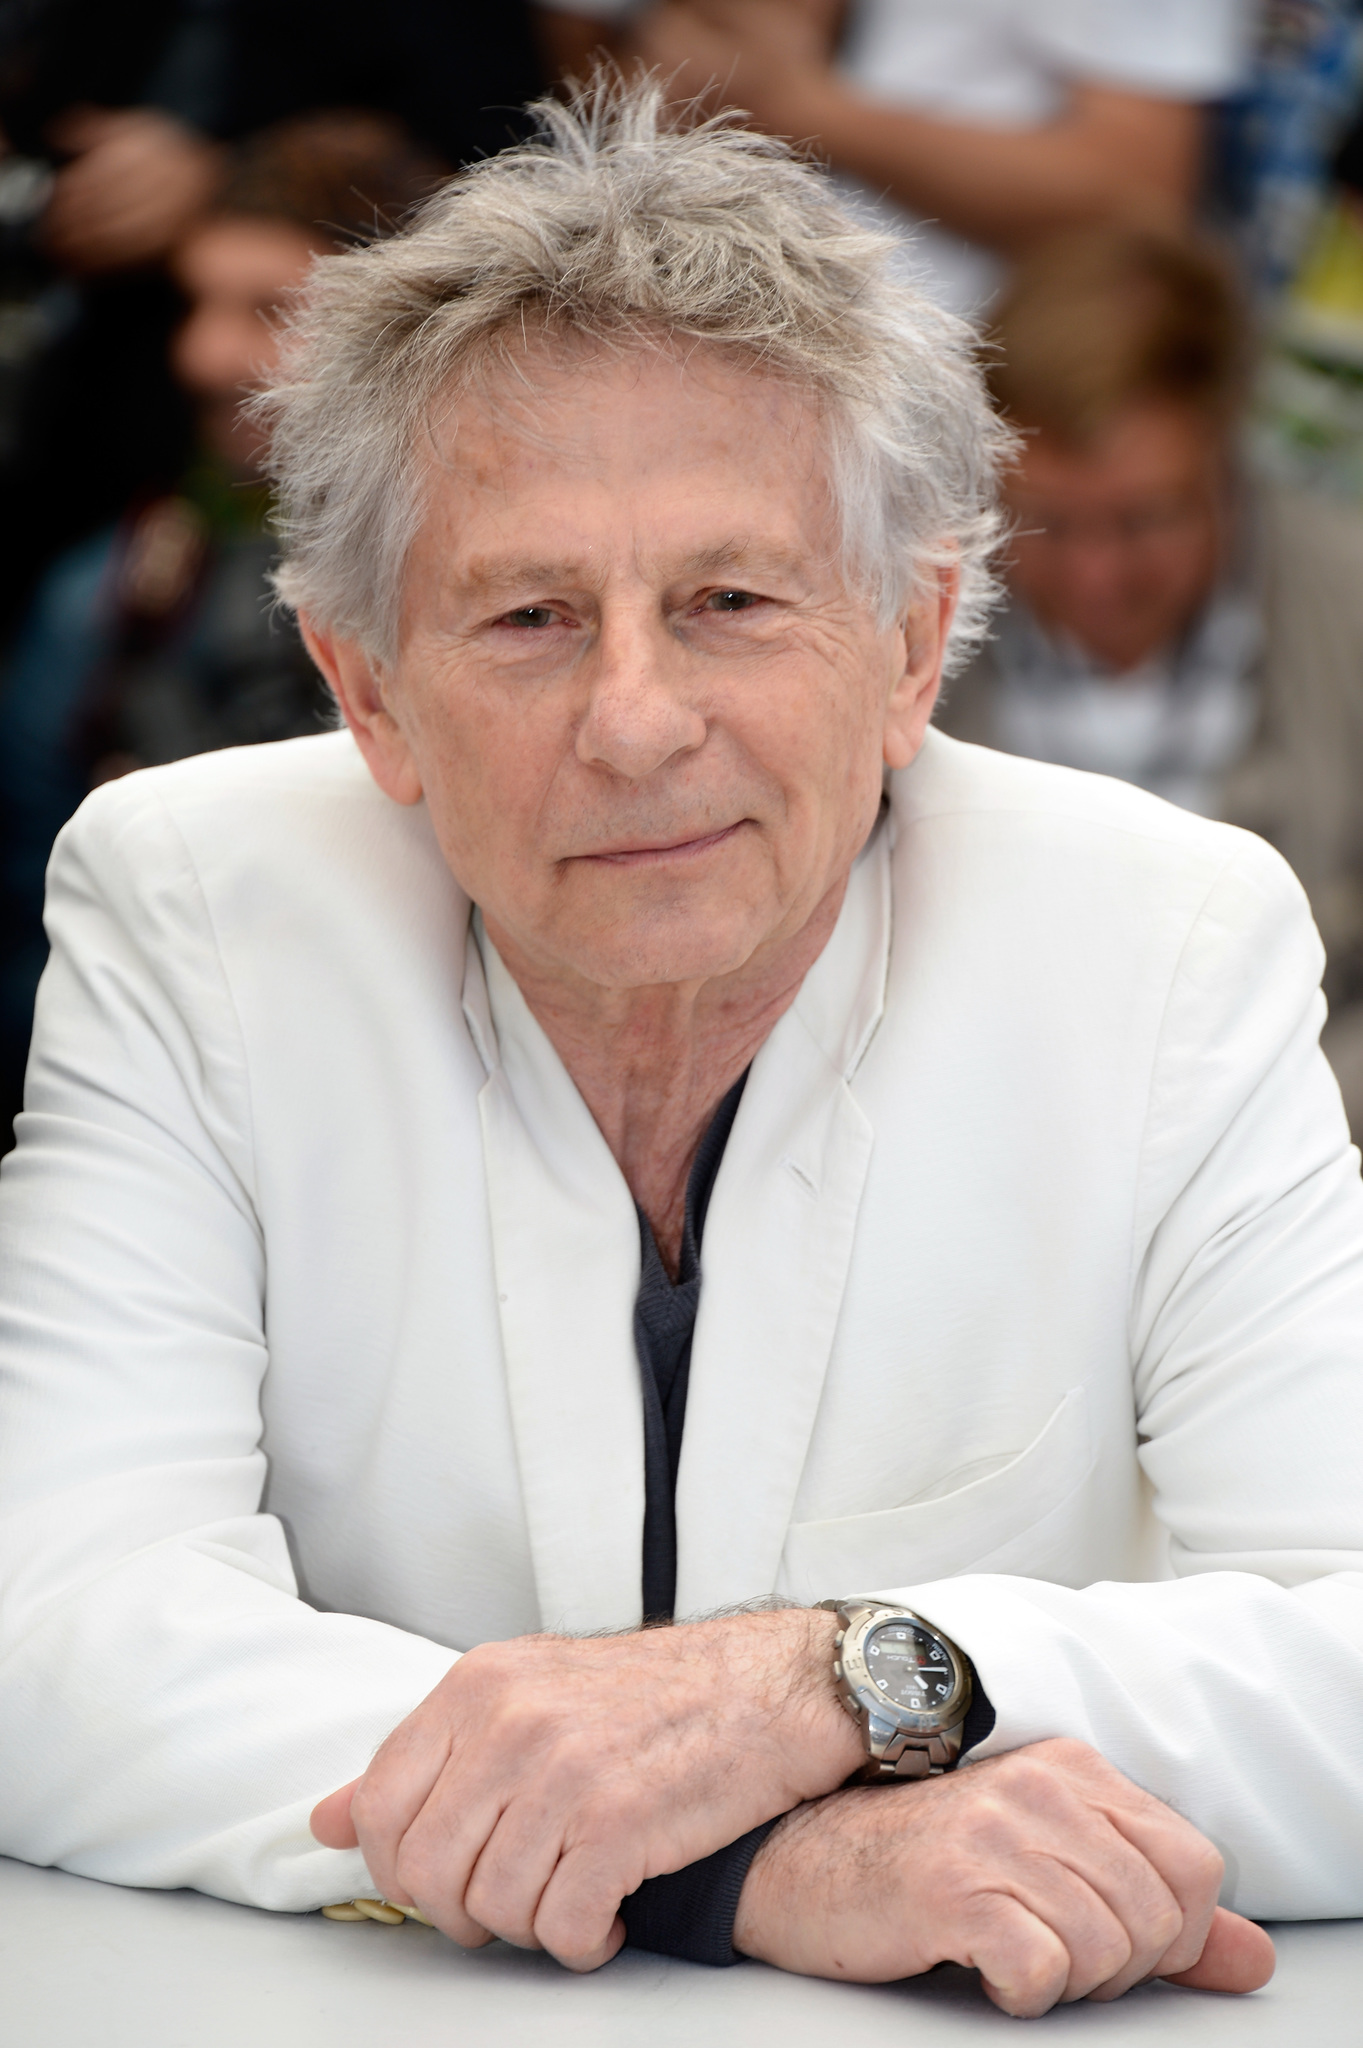 Roman Polanski at event of Venera kailiuose (2013)